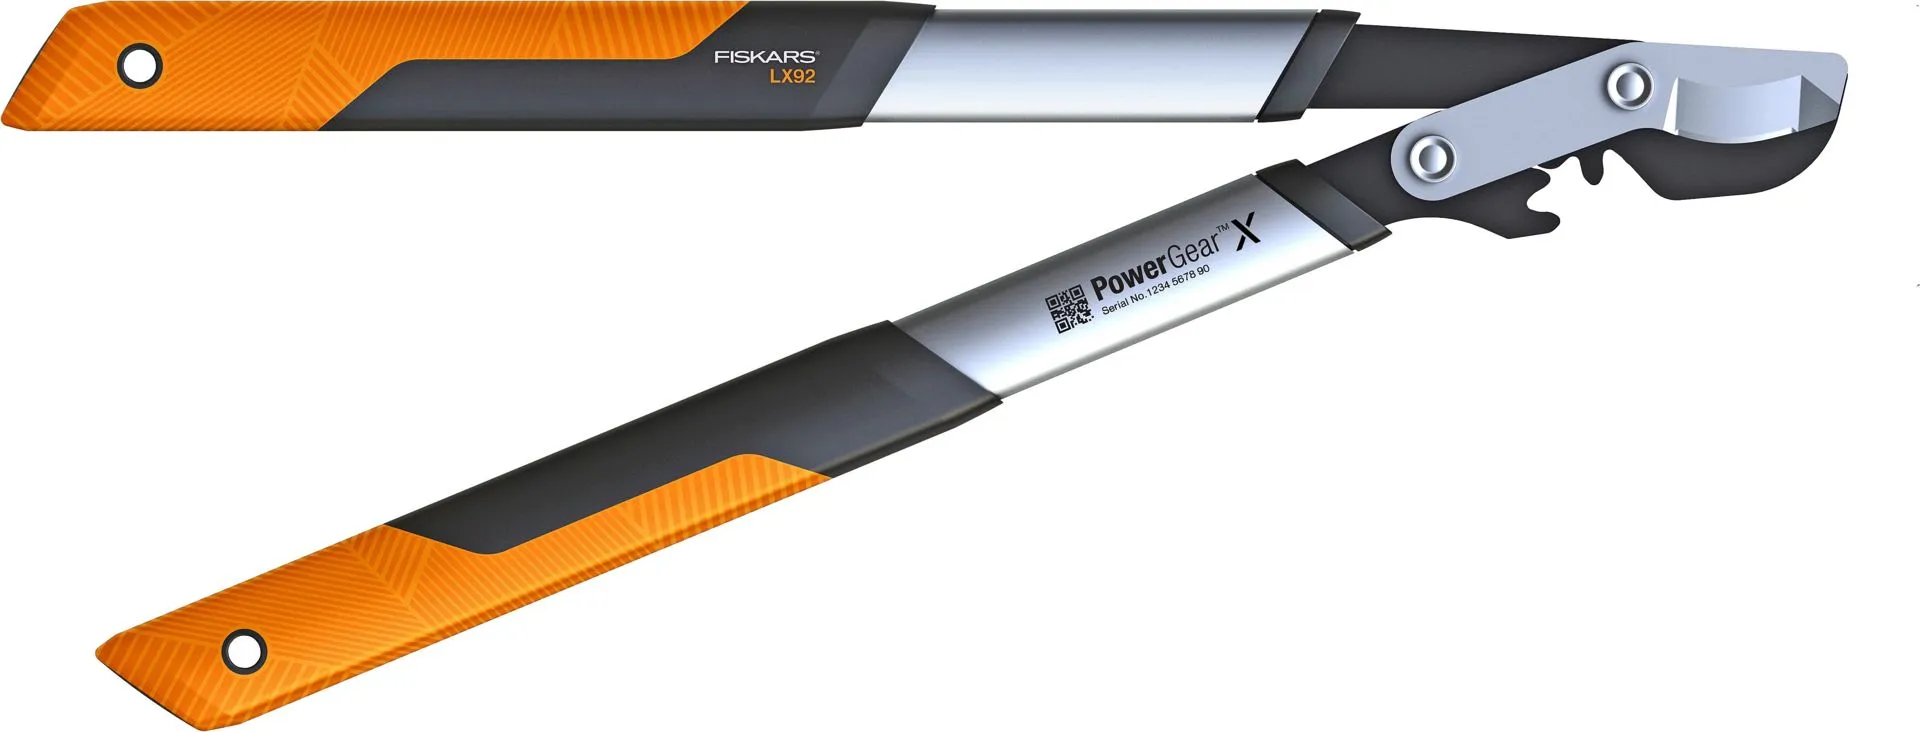 Fiskars PowerGear™ X ohileikkaavat raivaussakset S